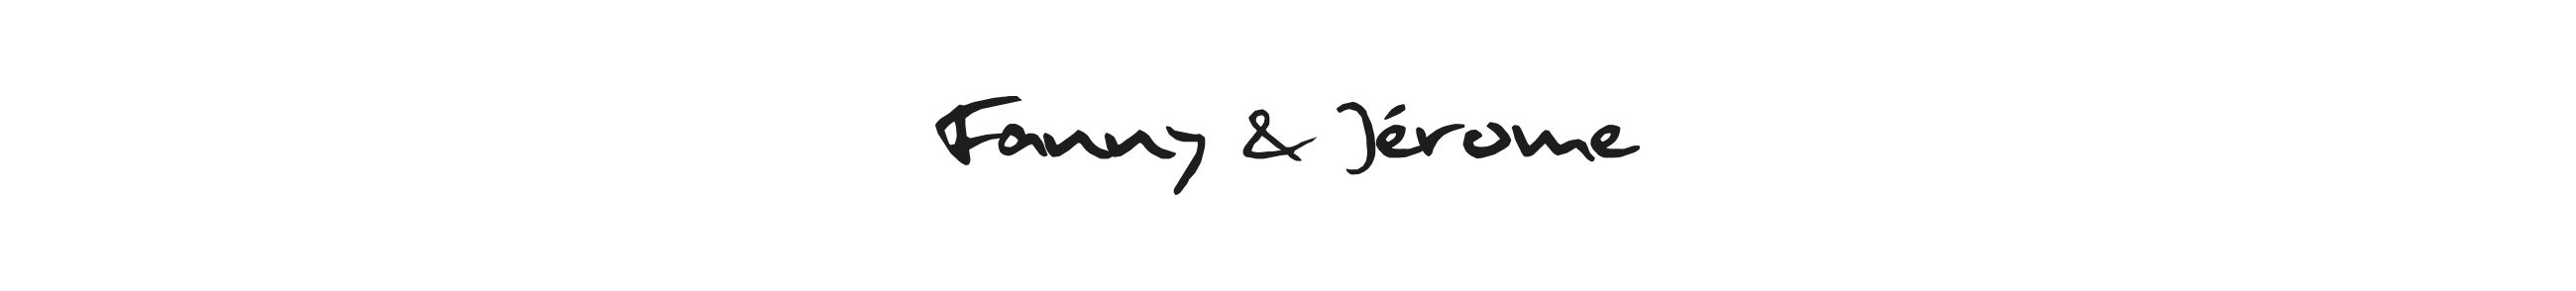 signature des deux dirigeant de la société